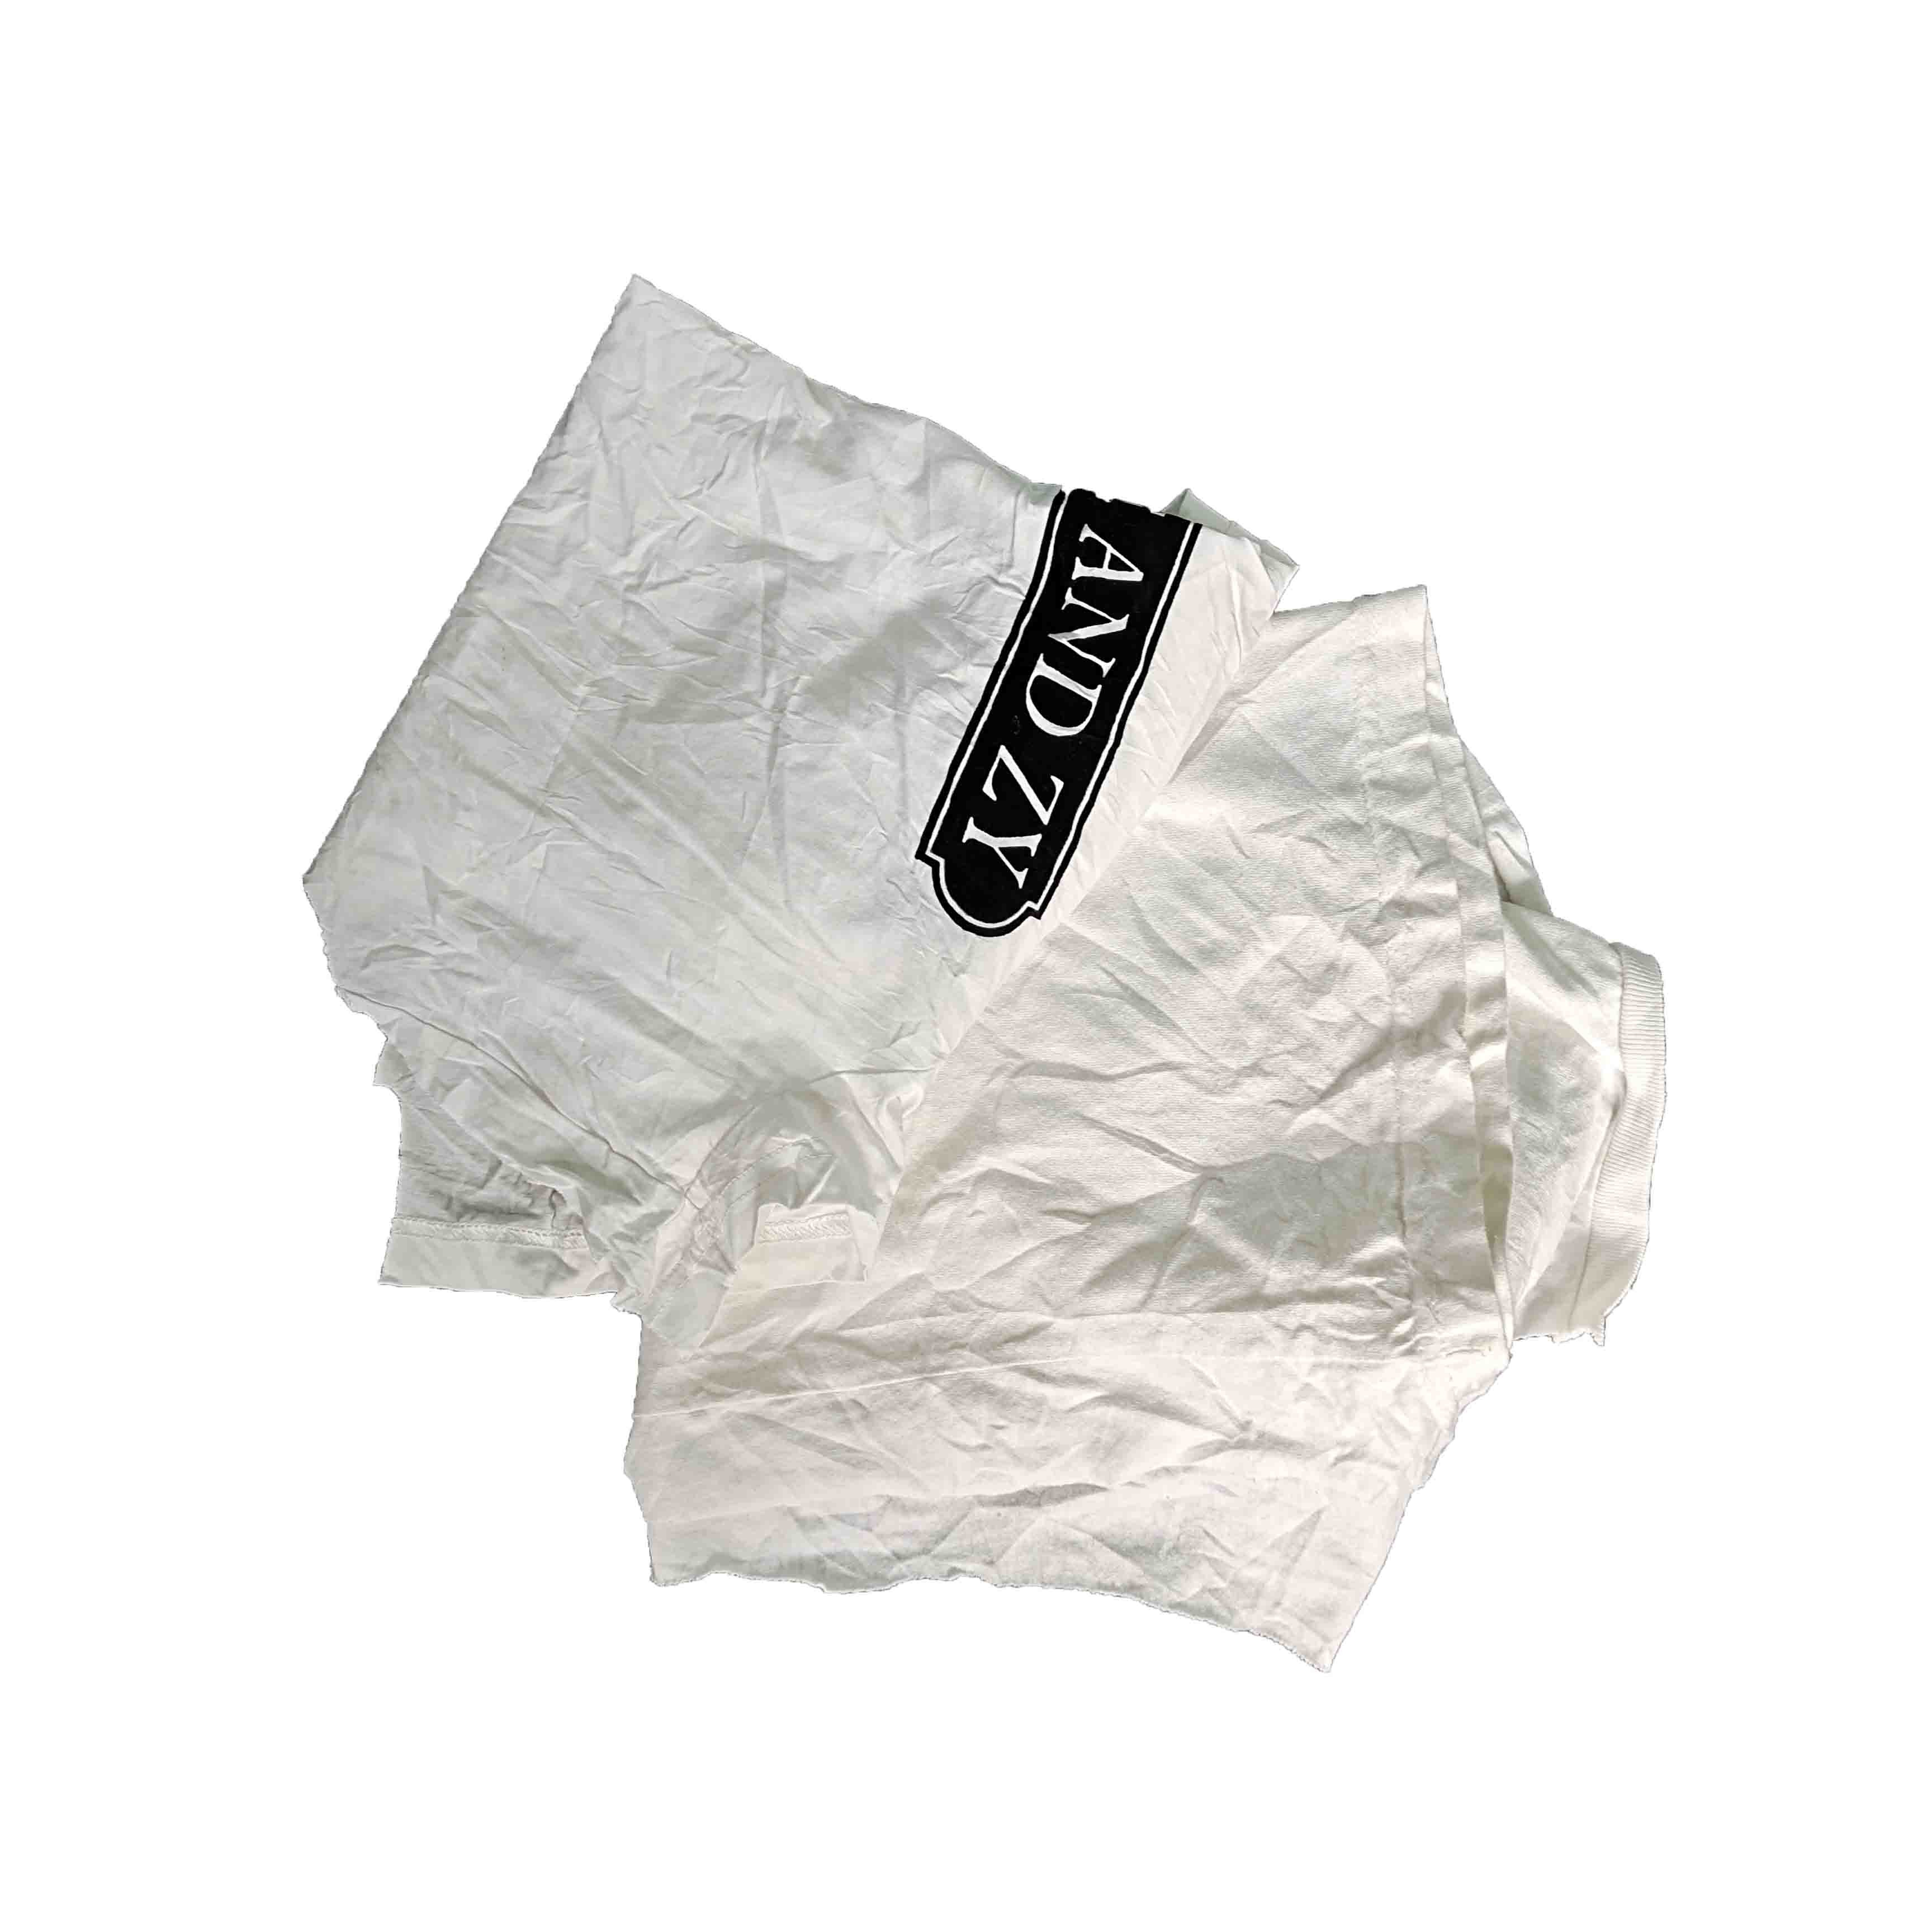 White T Shirt 85% Cotton 10Kg Industrial Cotton Rags